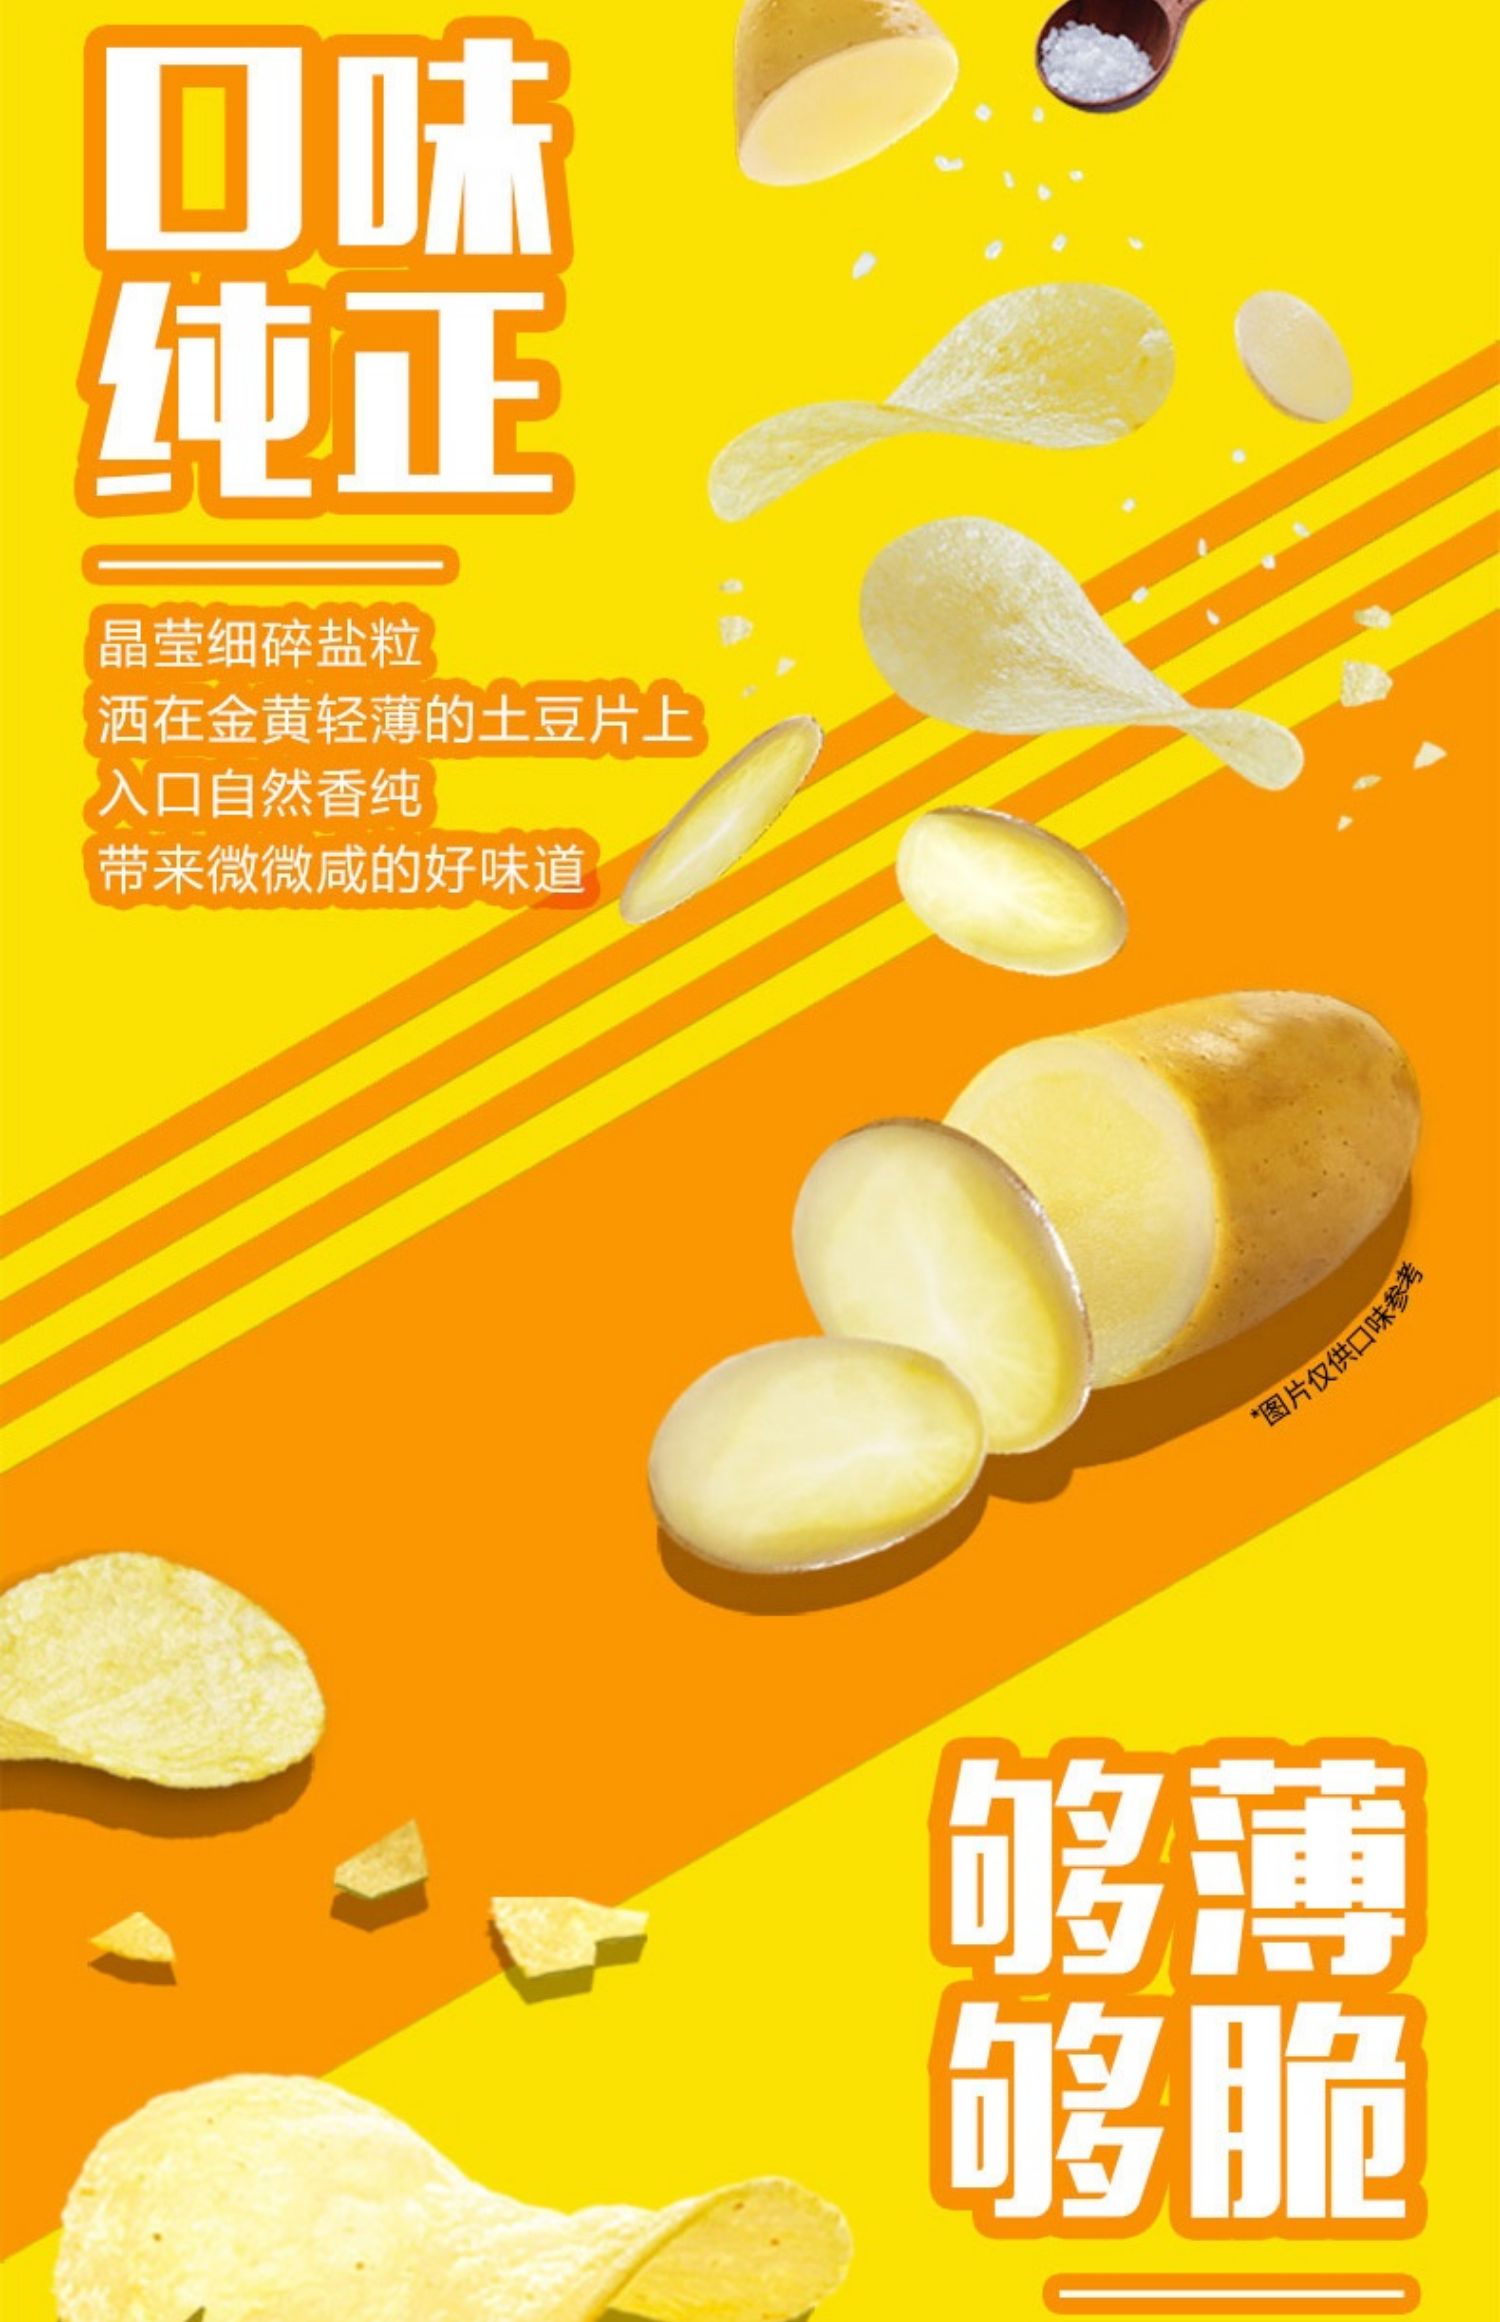 【优酷】乐事薯片休闲零食40g*12包